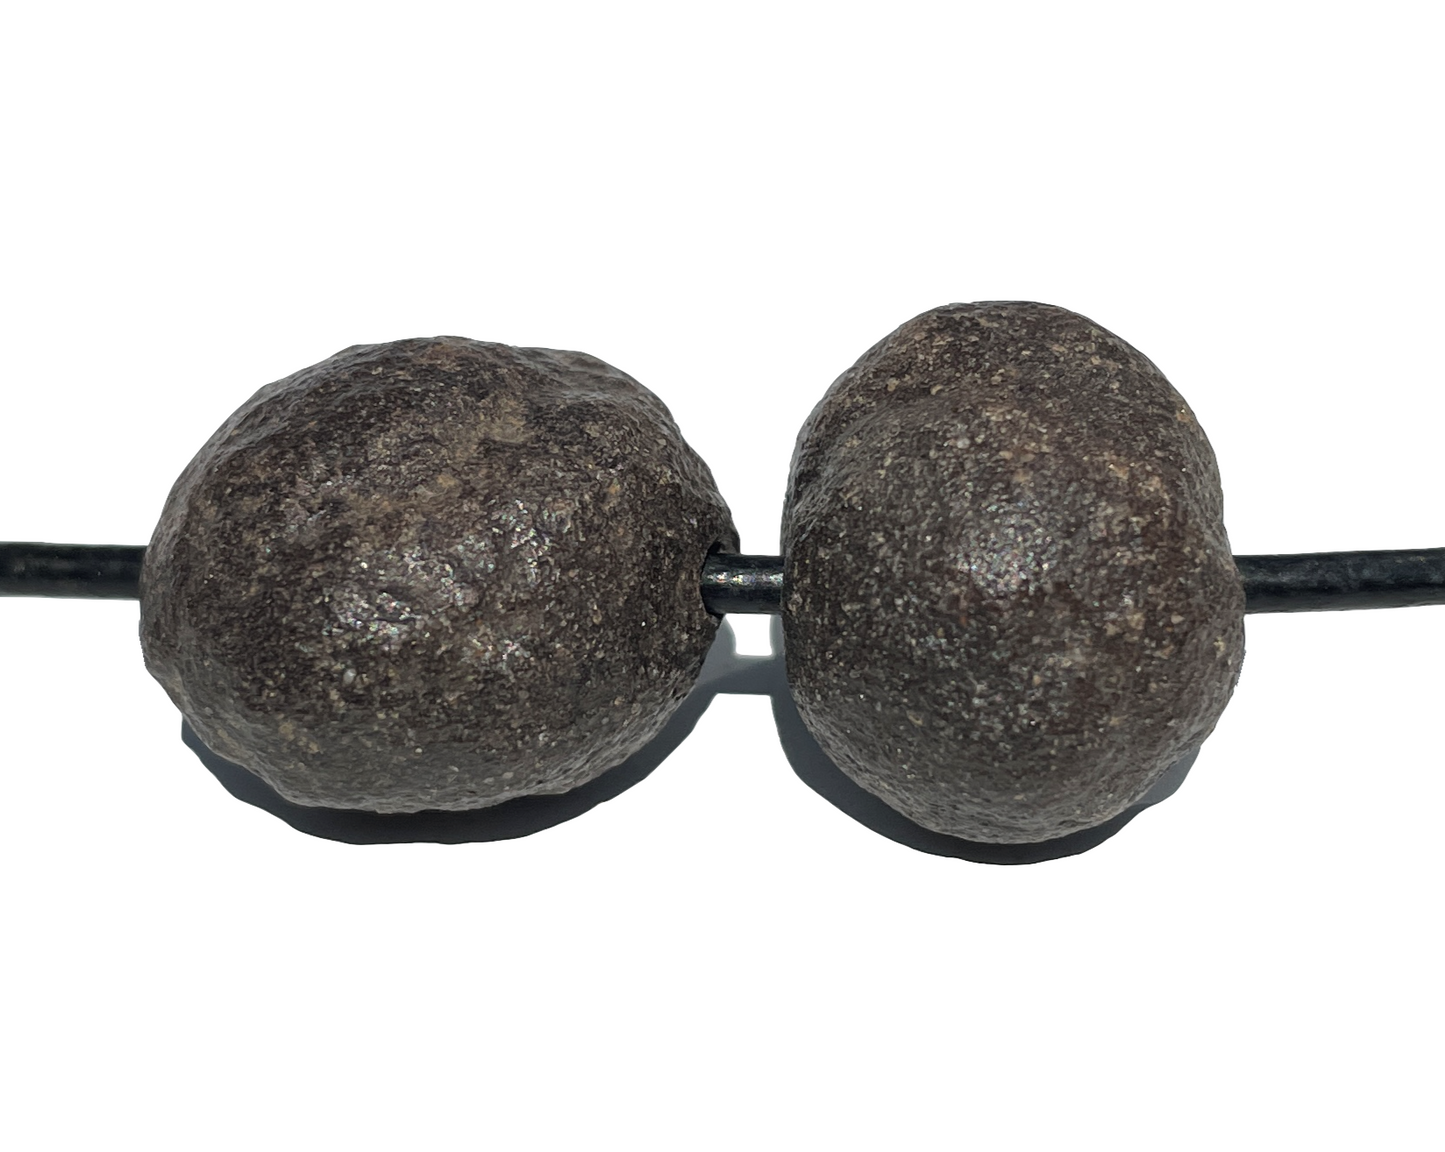 Moqui Marbles - Anhänger gebohrt - Shaman Stones